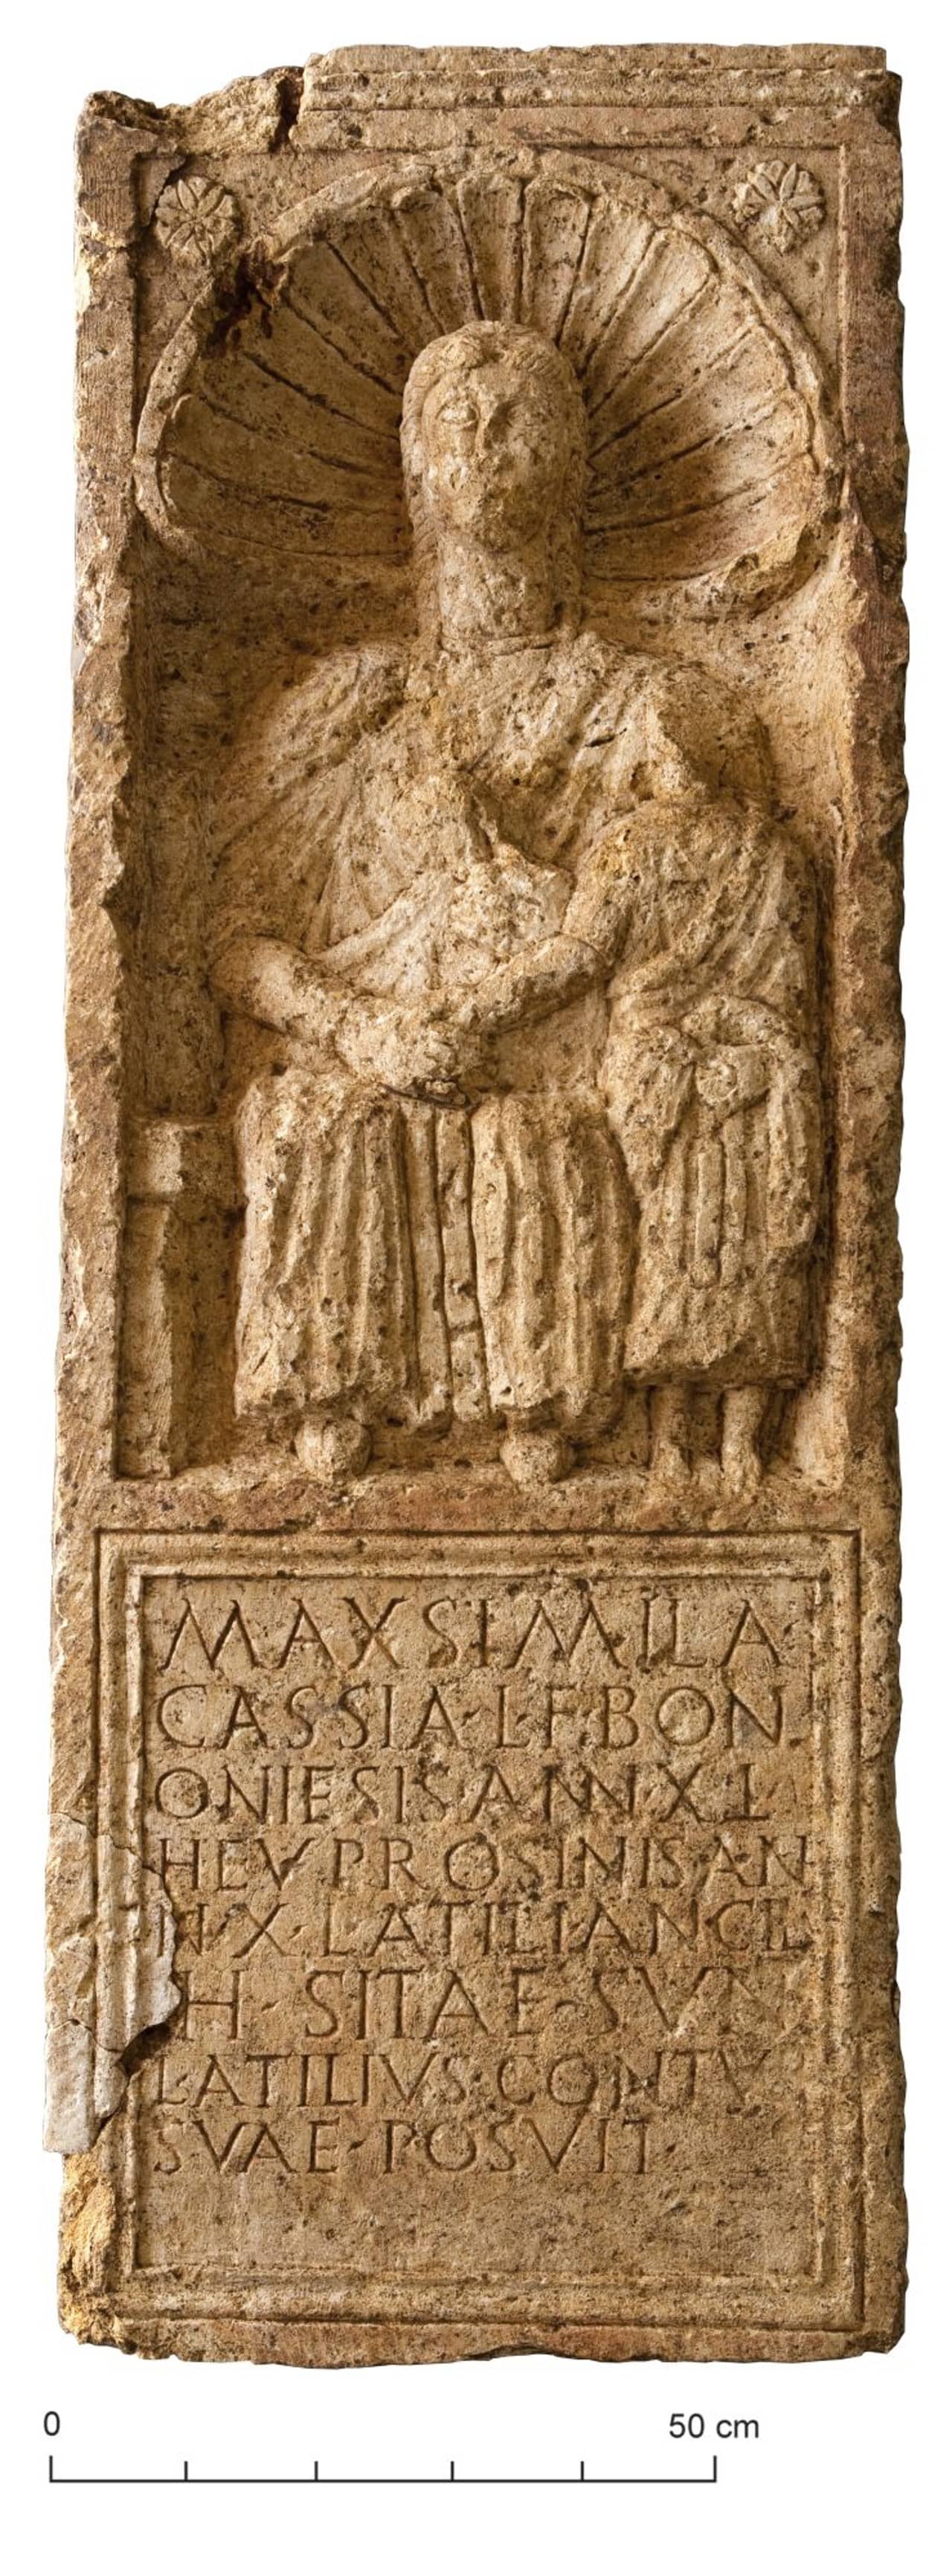 Grabstein mit Darstellund einer sitzenden Frau, die ein Kind an der Hand hält. 